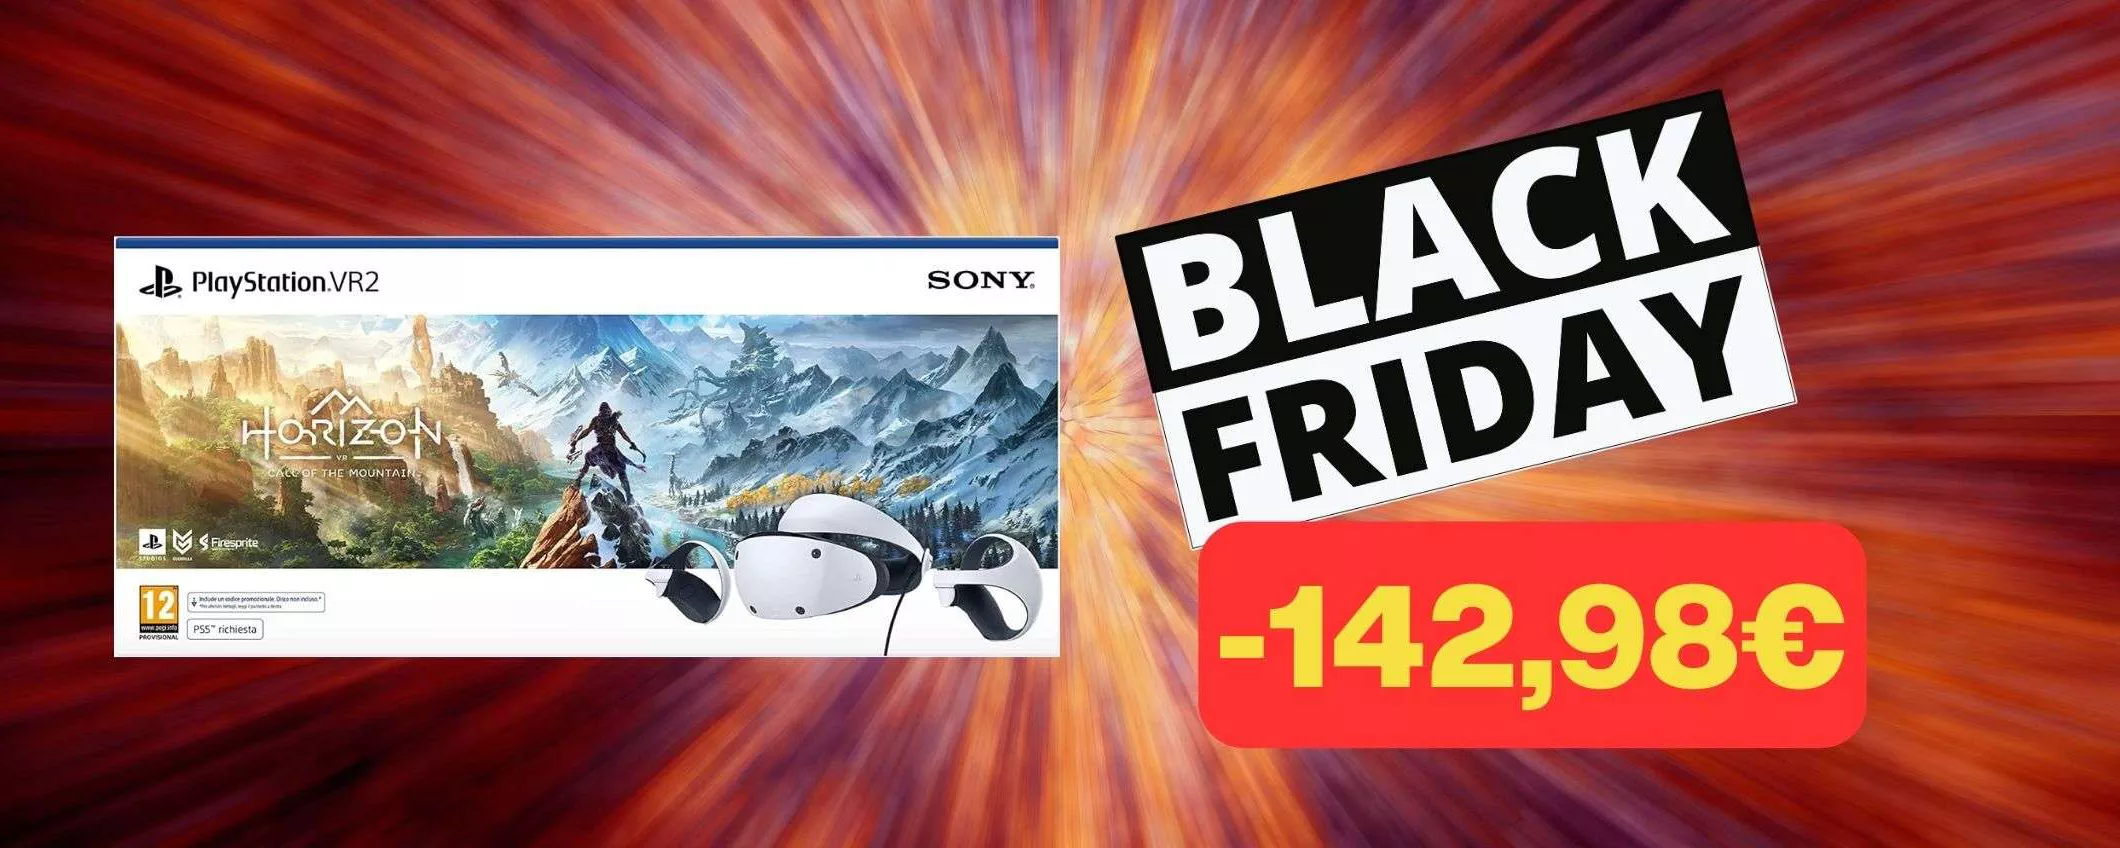 PS VR 2 con Horizon CROLLA di prezzo (-142,98€): BOMBA BLACK FRIDAY